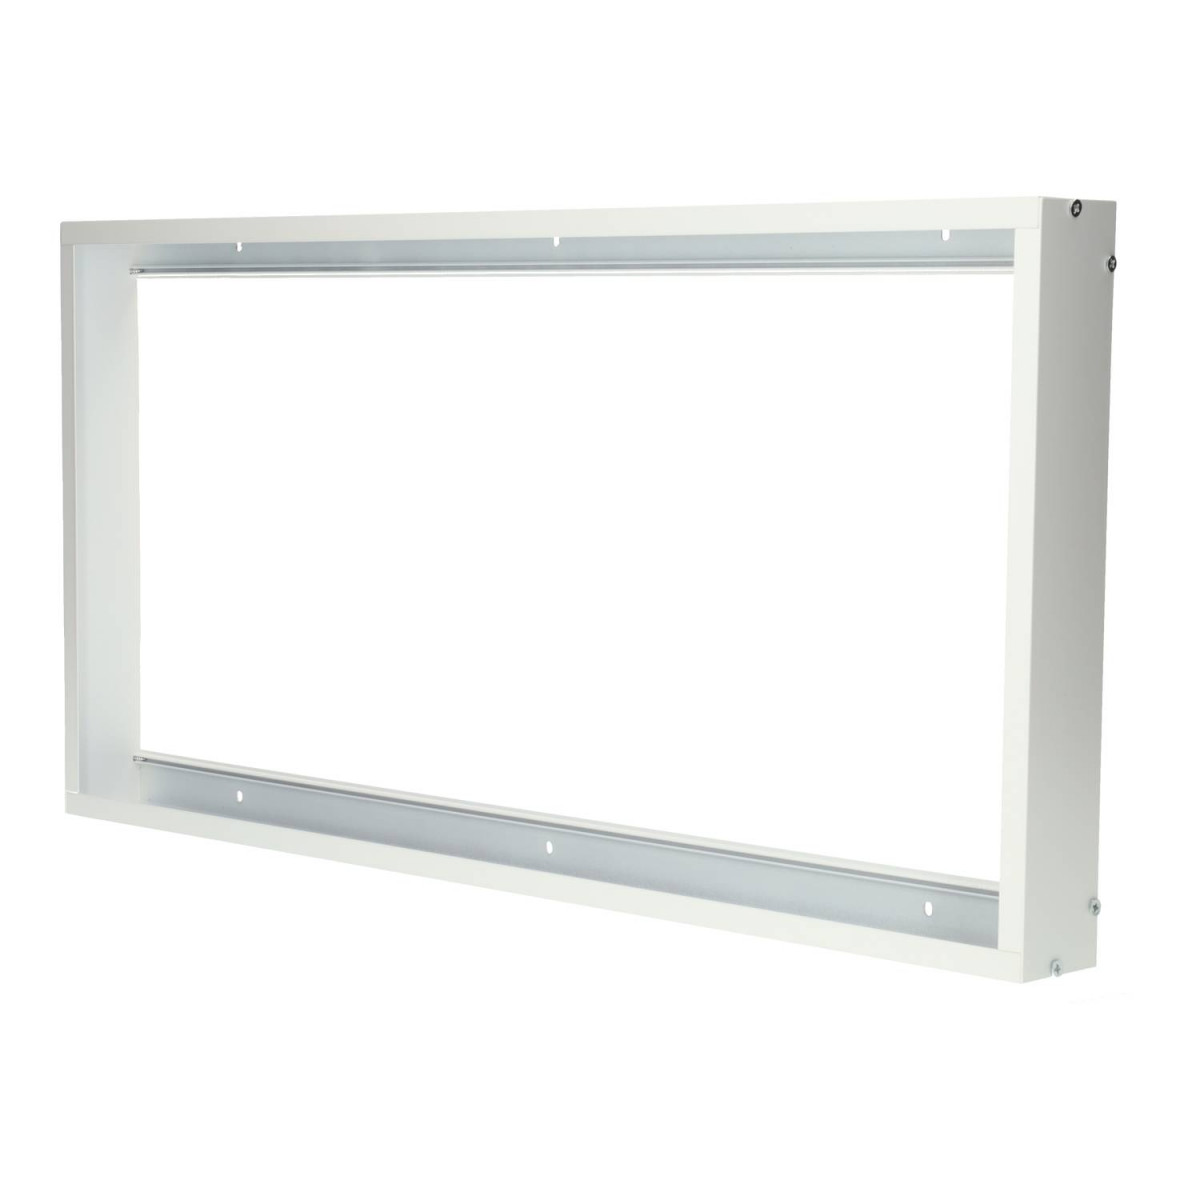 Frame for 30x60 Panel, white coloured, Aluminium